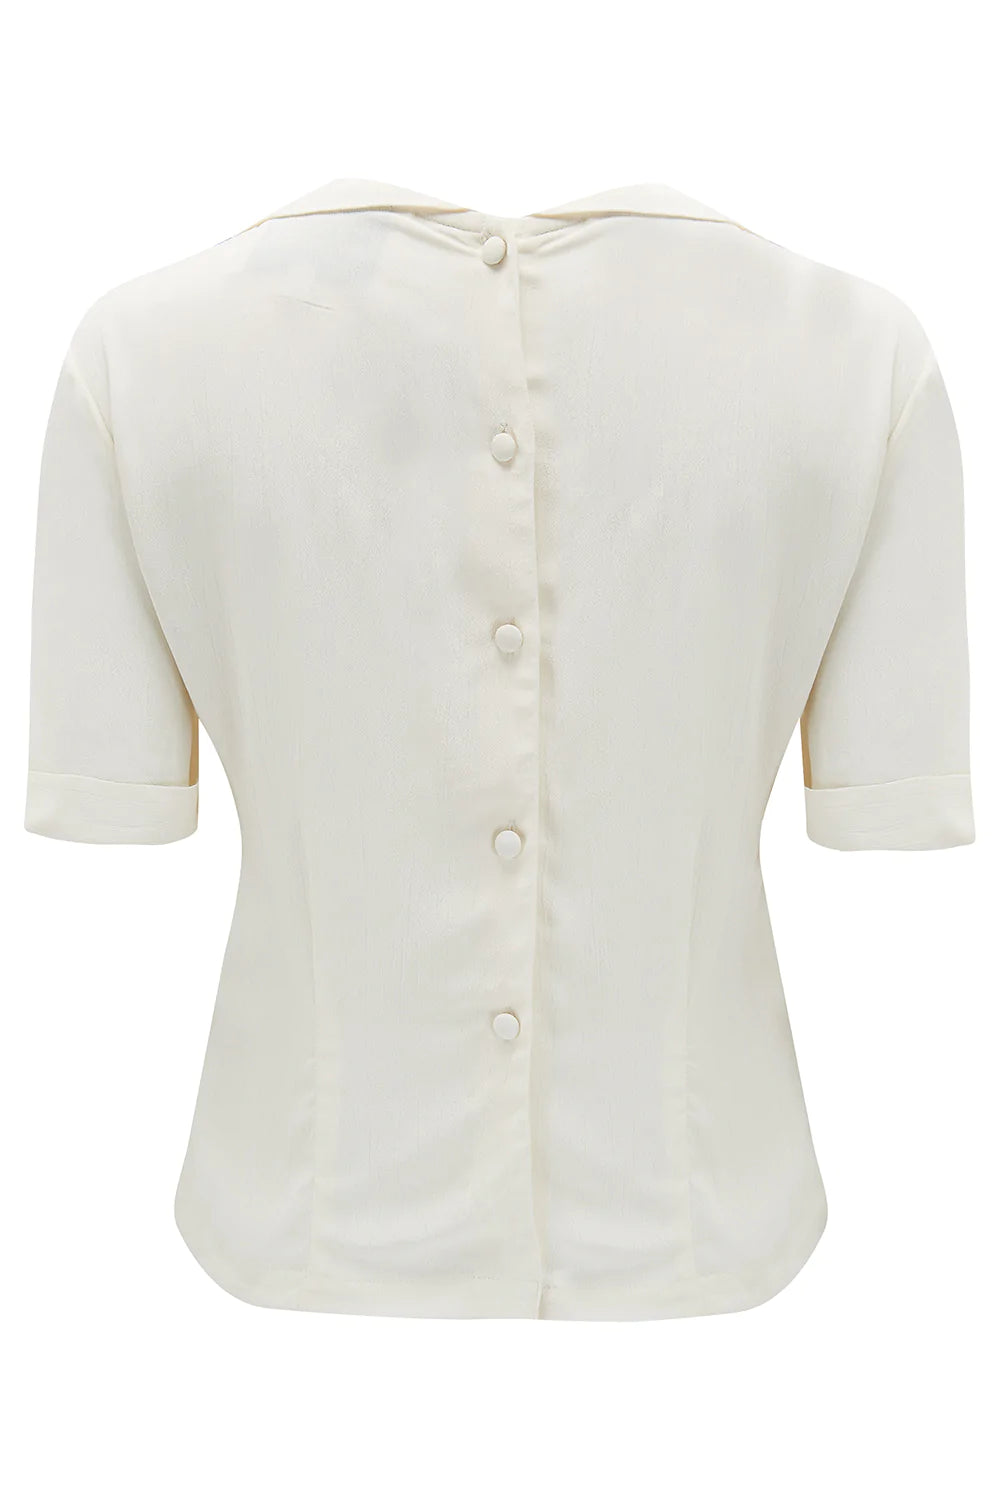 Moralsk stress stempel 1940'er stils skjorte i creme med knapper bagpå fra Bloomsbury